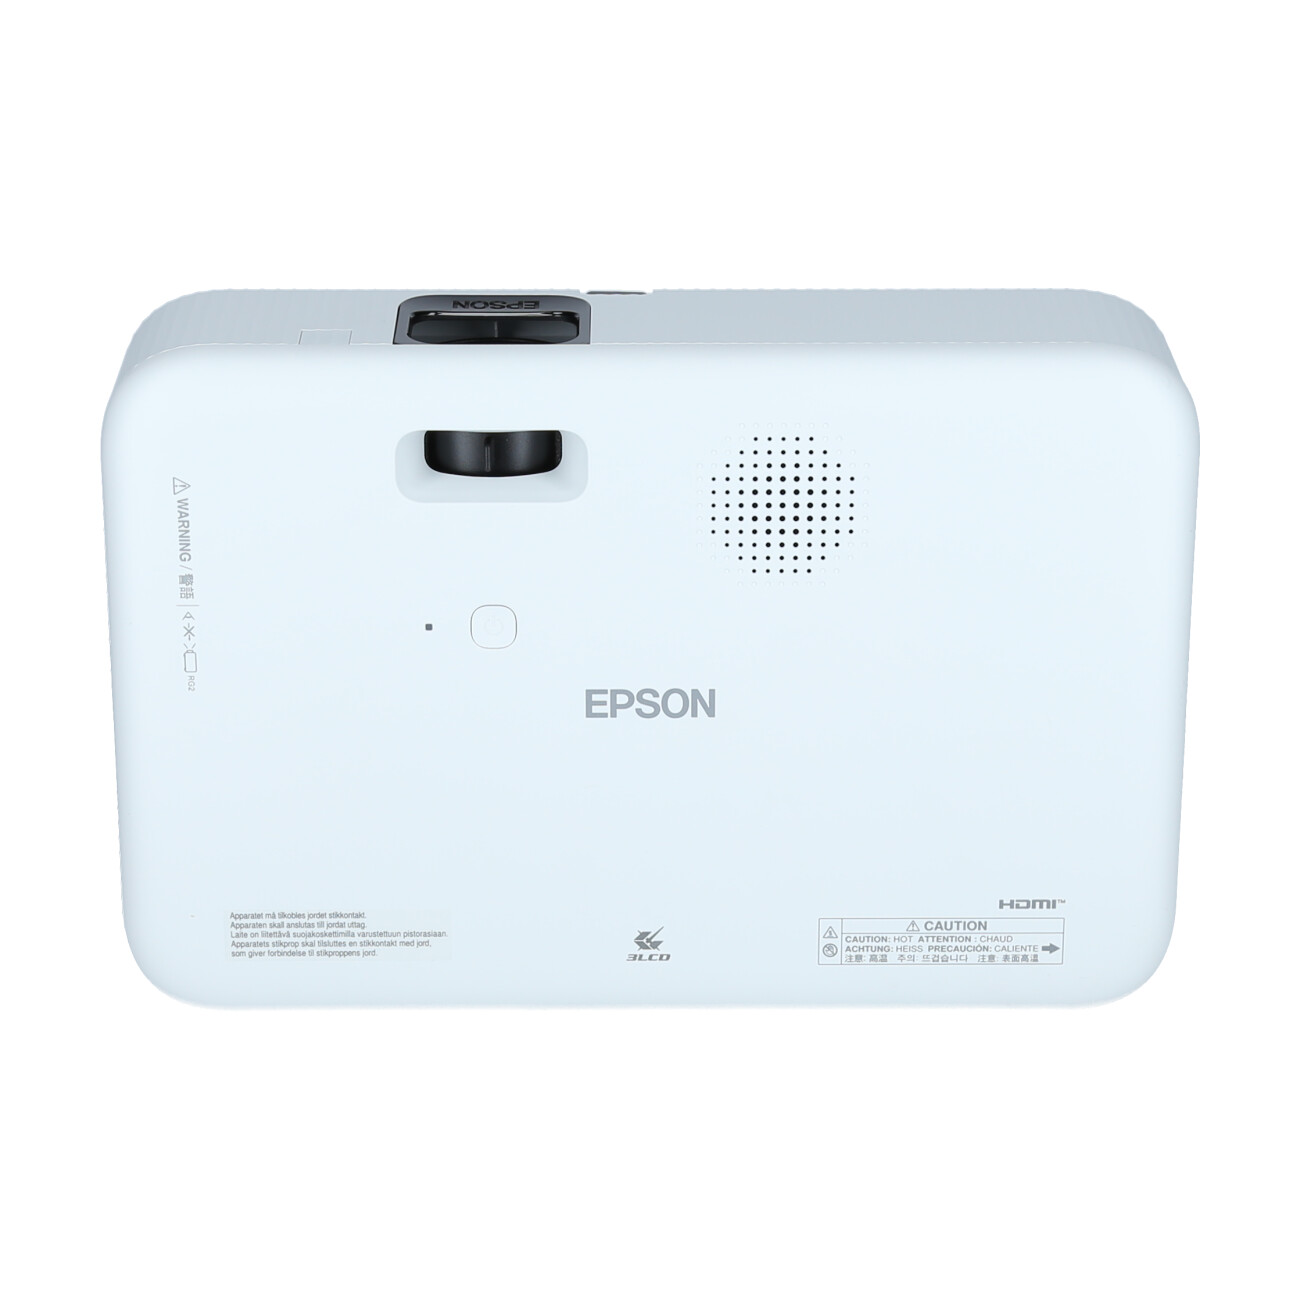 Epson-CO-FH02-Beamer-Full-HD-Android-TV-3000-Ansi-Lumen